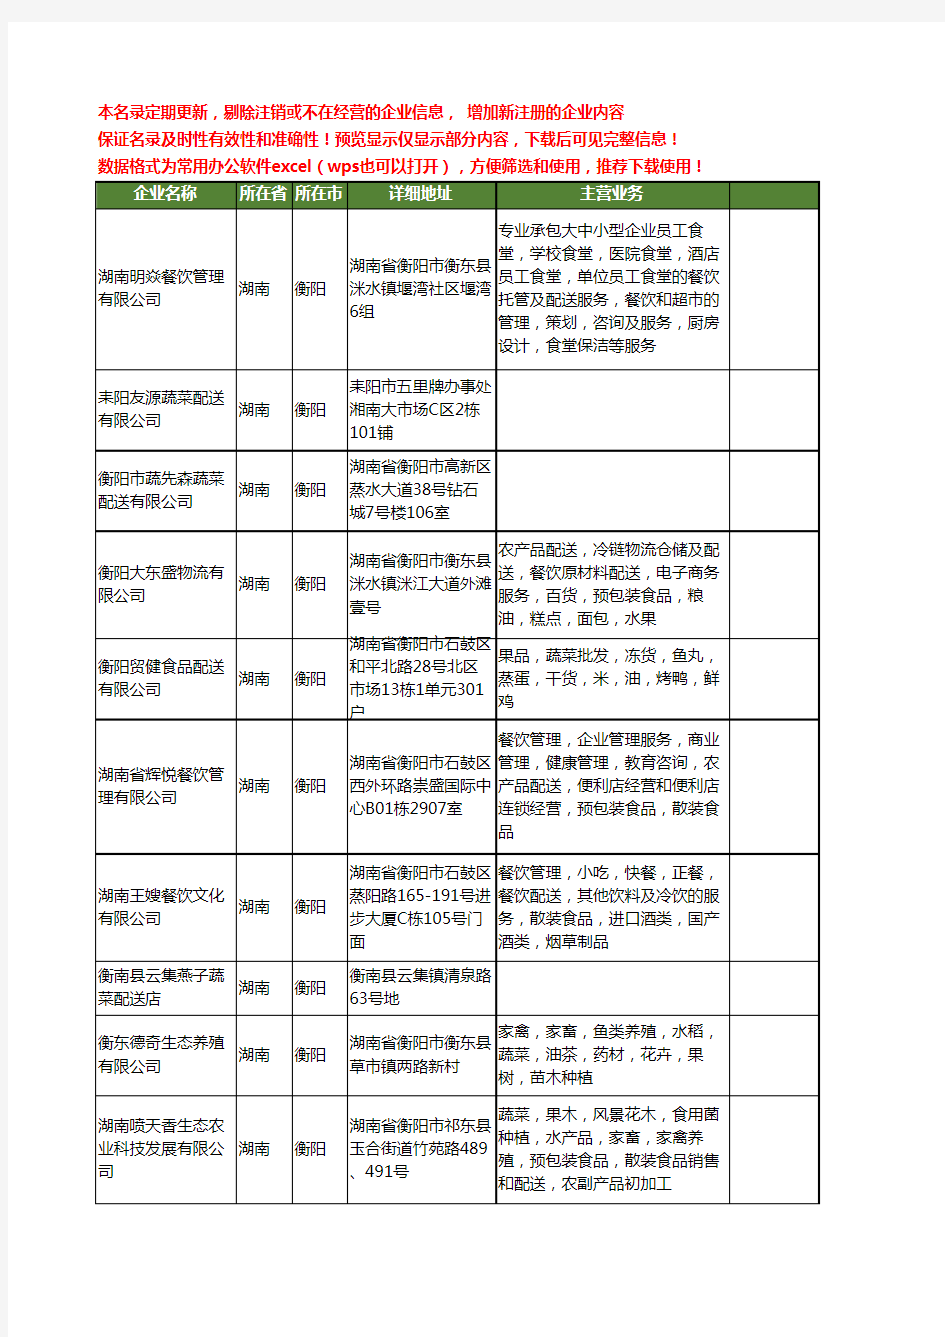 新版湖南省衡阳配送蔬菜工商企业公司商家名录名单联系方式大全26家